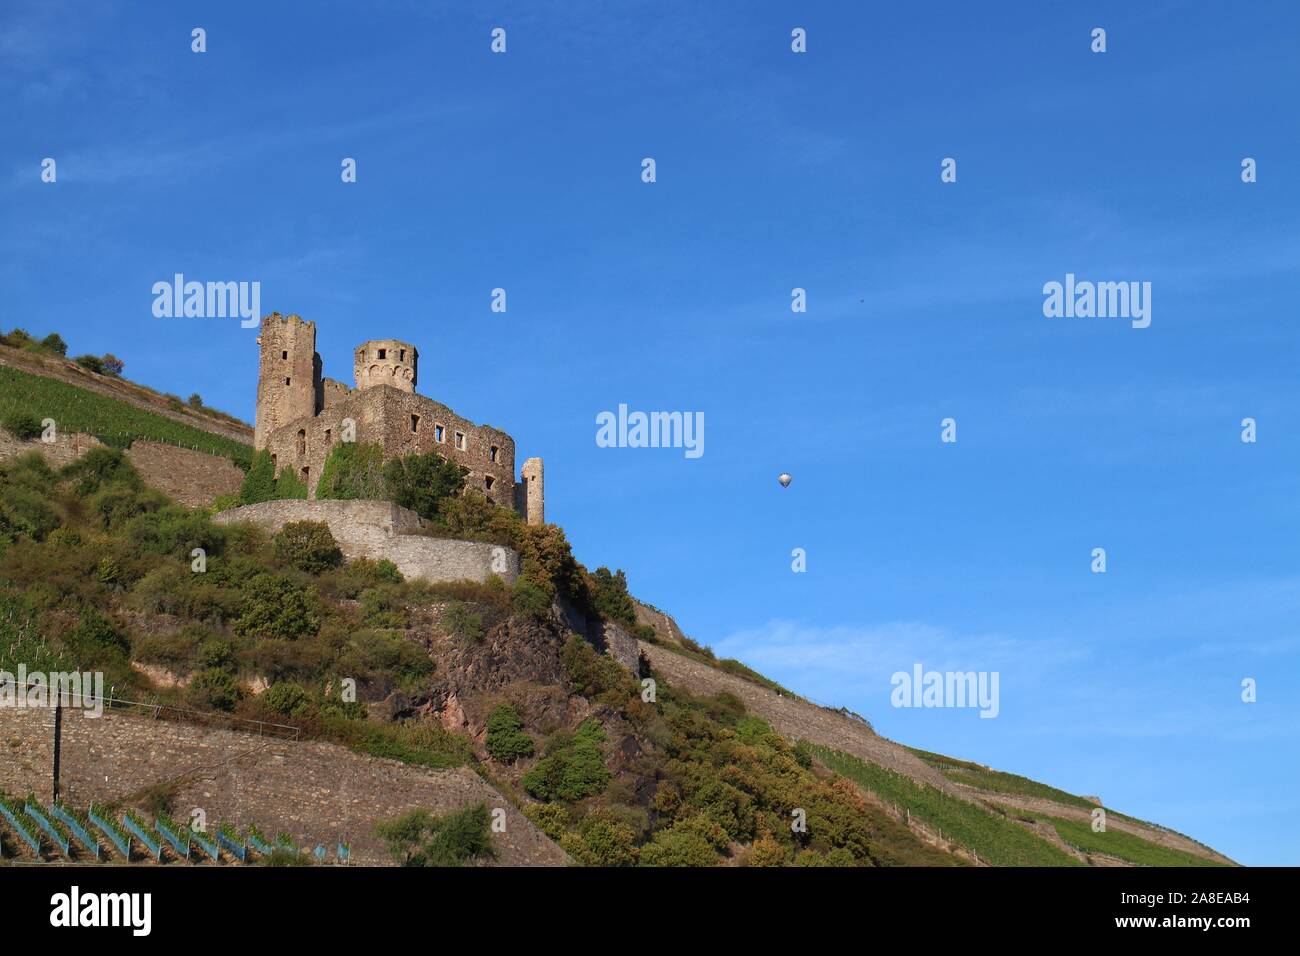 Ehrenfels castillo sobre una colina con un globo de aire caliente, cerca de Rüdesheim, Hesse, Alemania, parte del 'Alto Valle del Rin Medio" sitio de patrimonio mundial de la UNESCO. Foto de stock